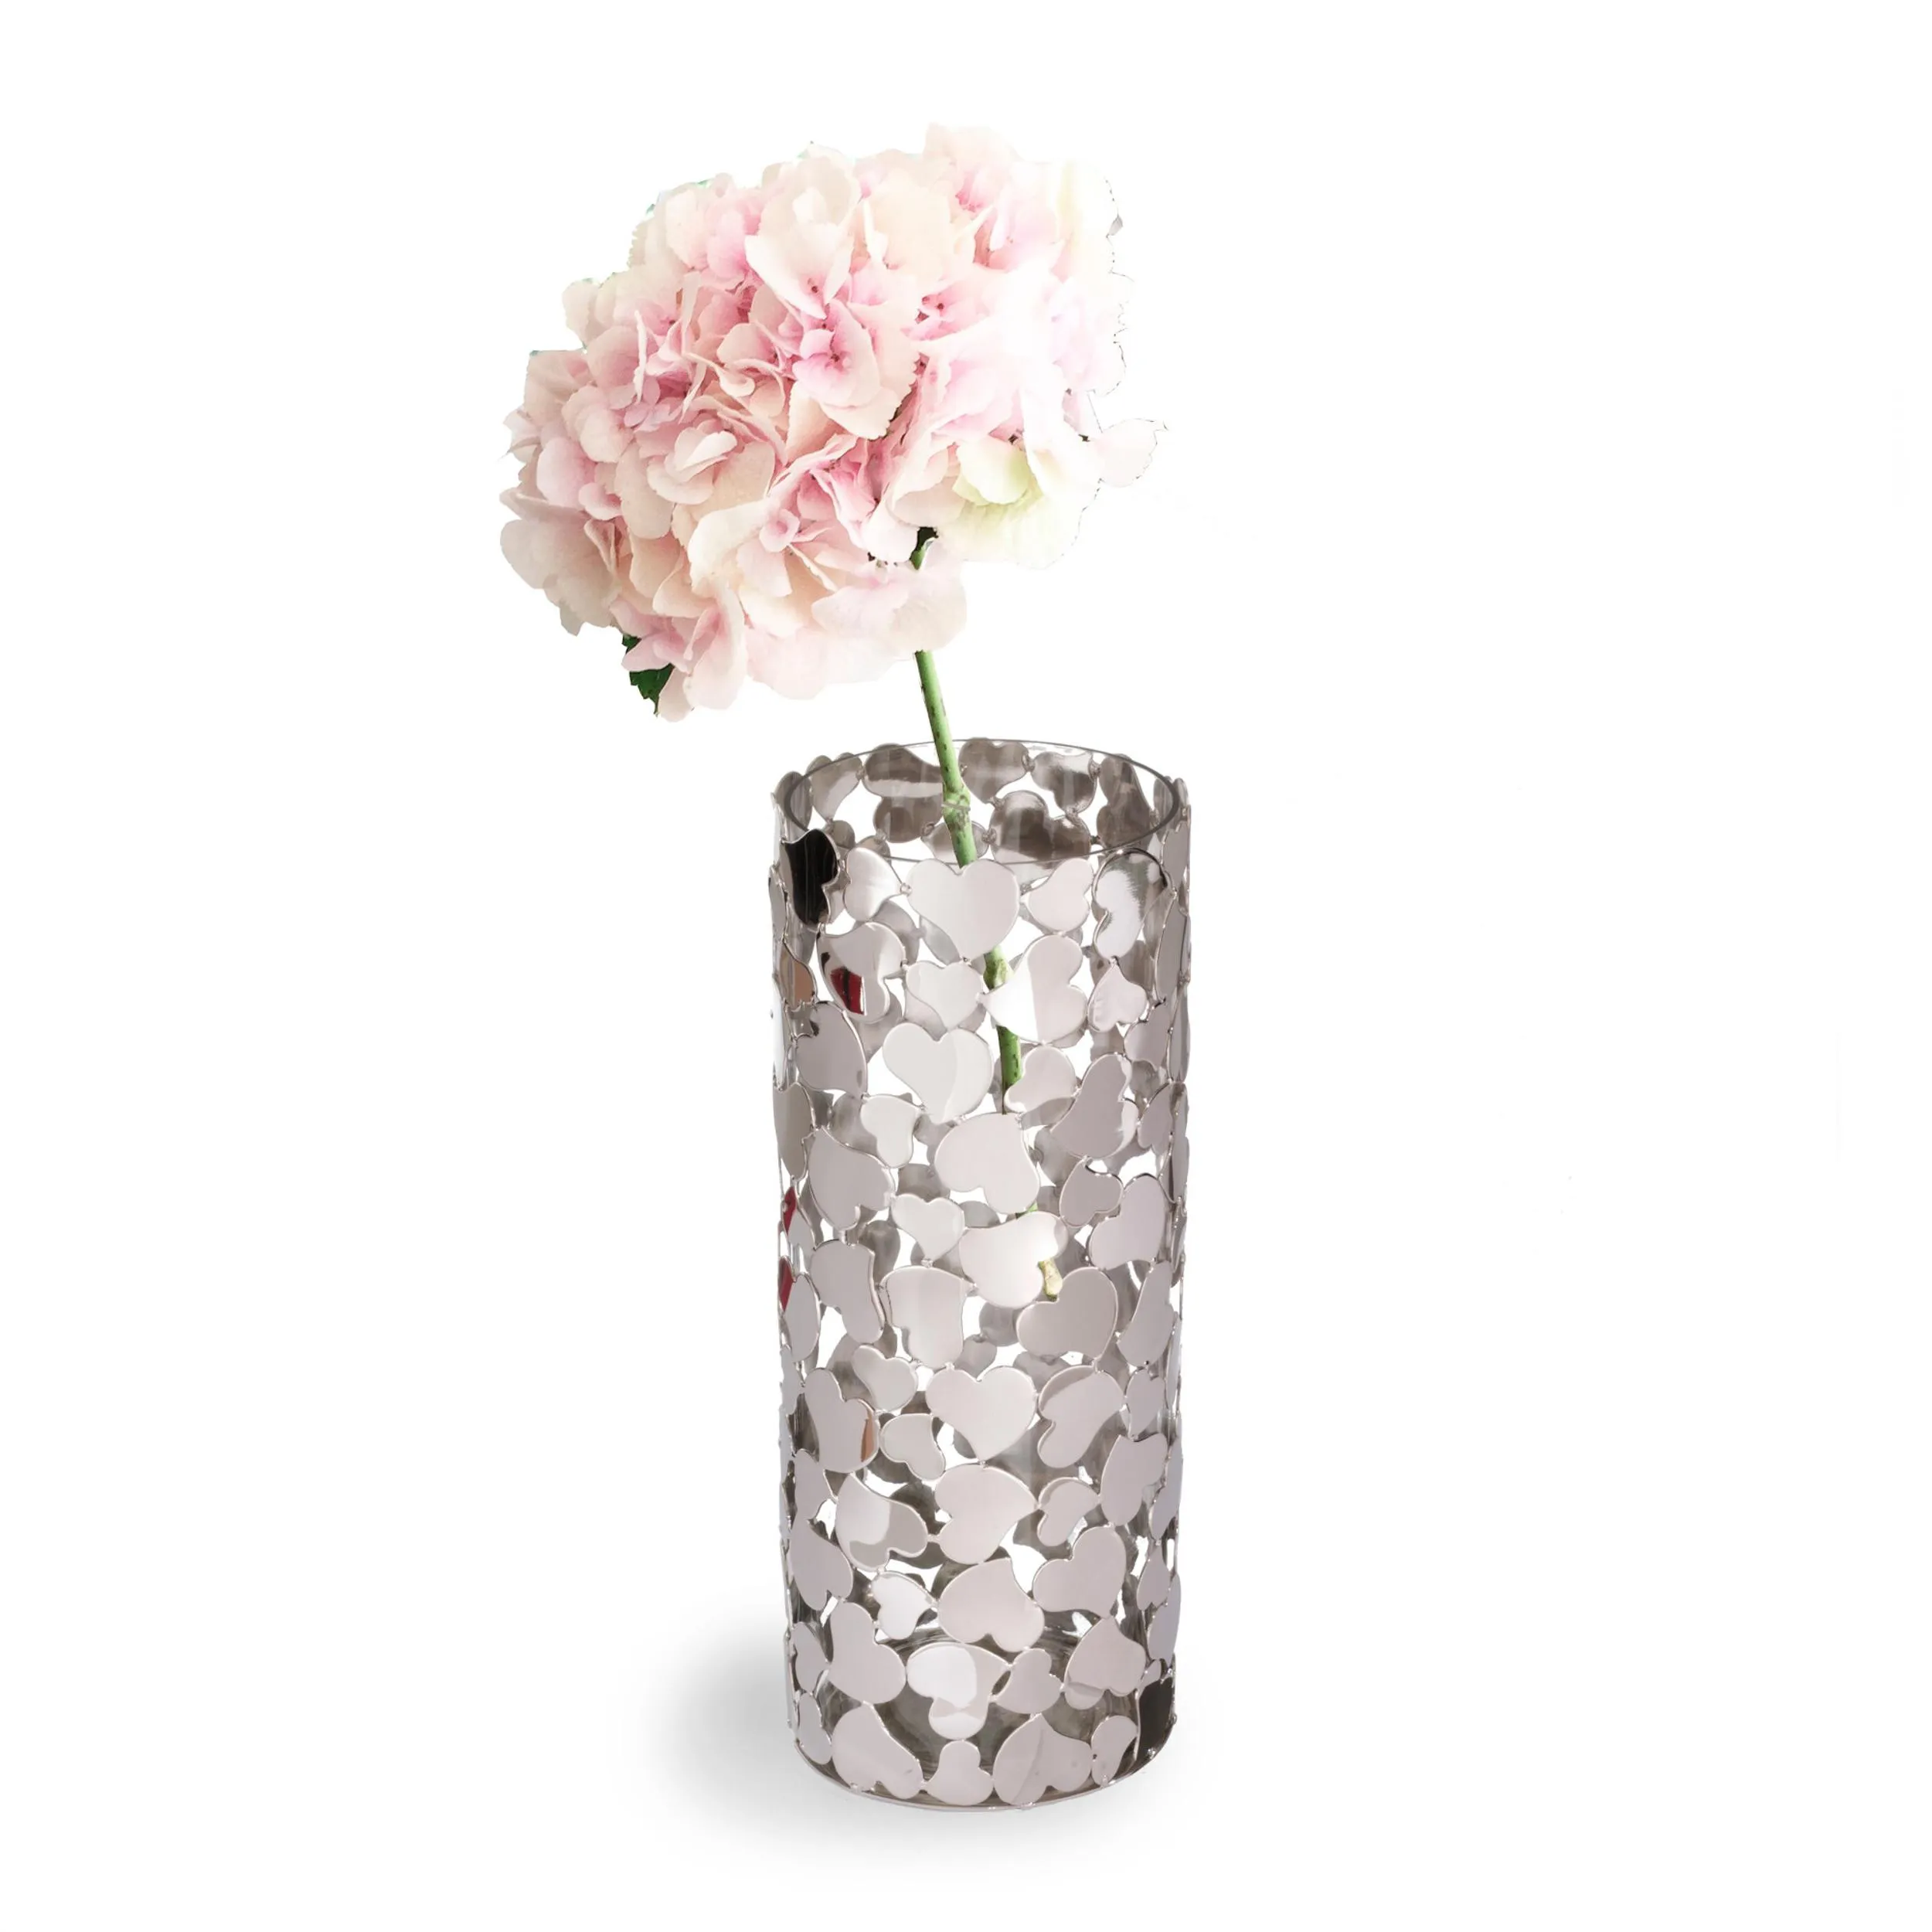 Vaso fiori in metallo argentato Cuori misura piccola diametro Ø11x26 cm Vaso Cuori tondo in metallo verniciato colore argento